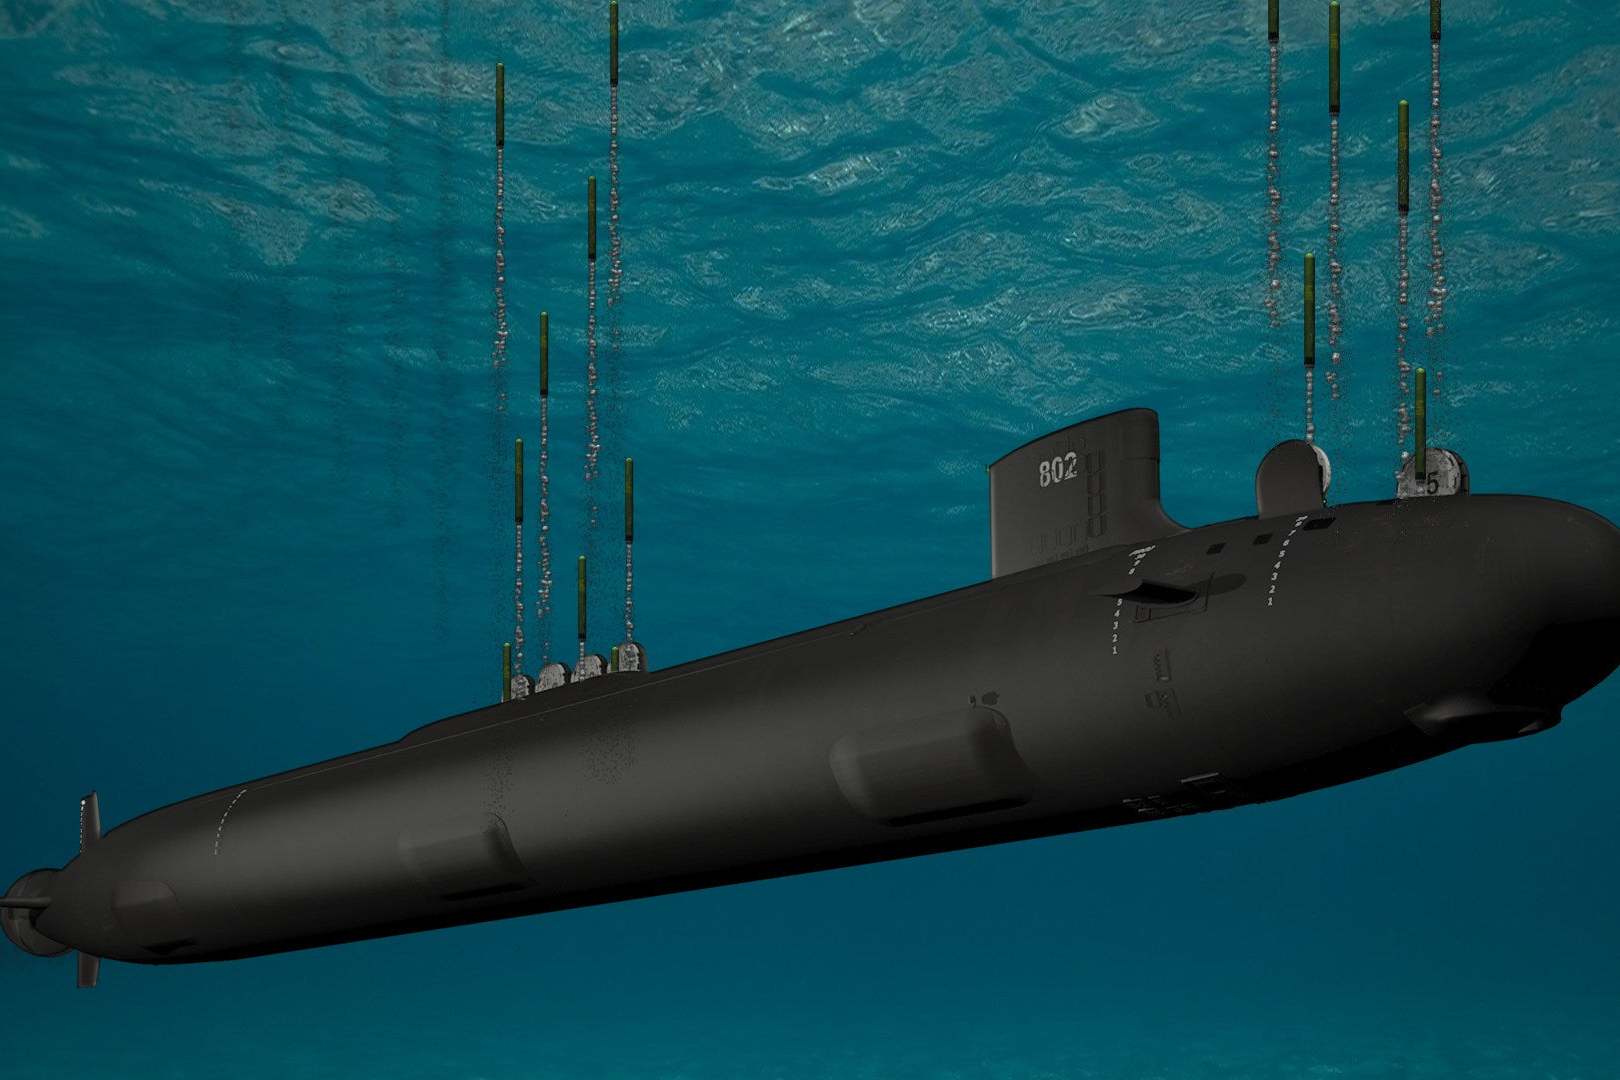 超导量子干涉仪潜艇图片